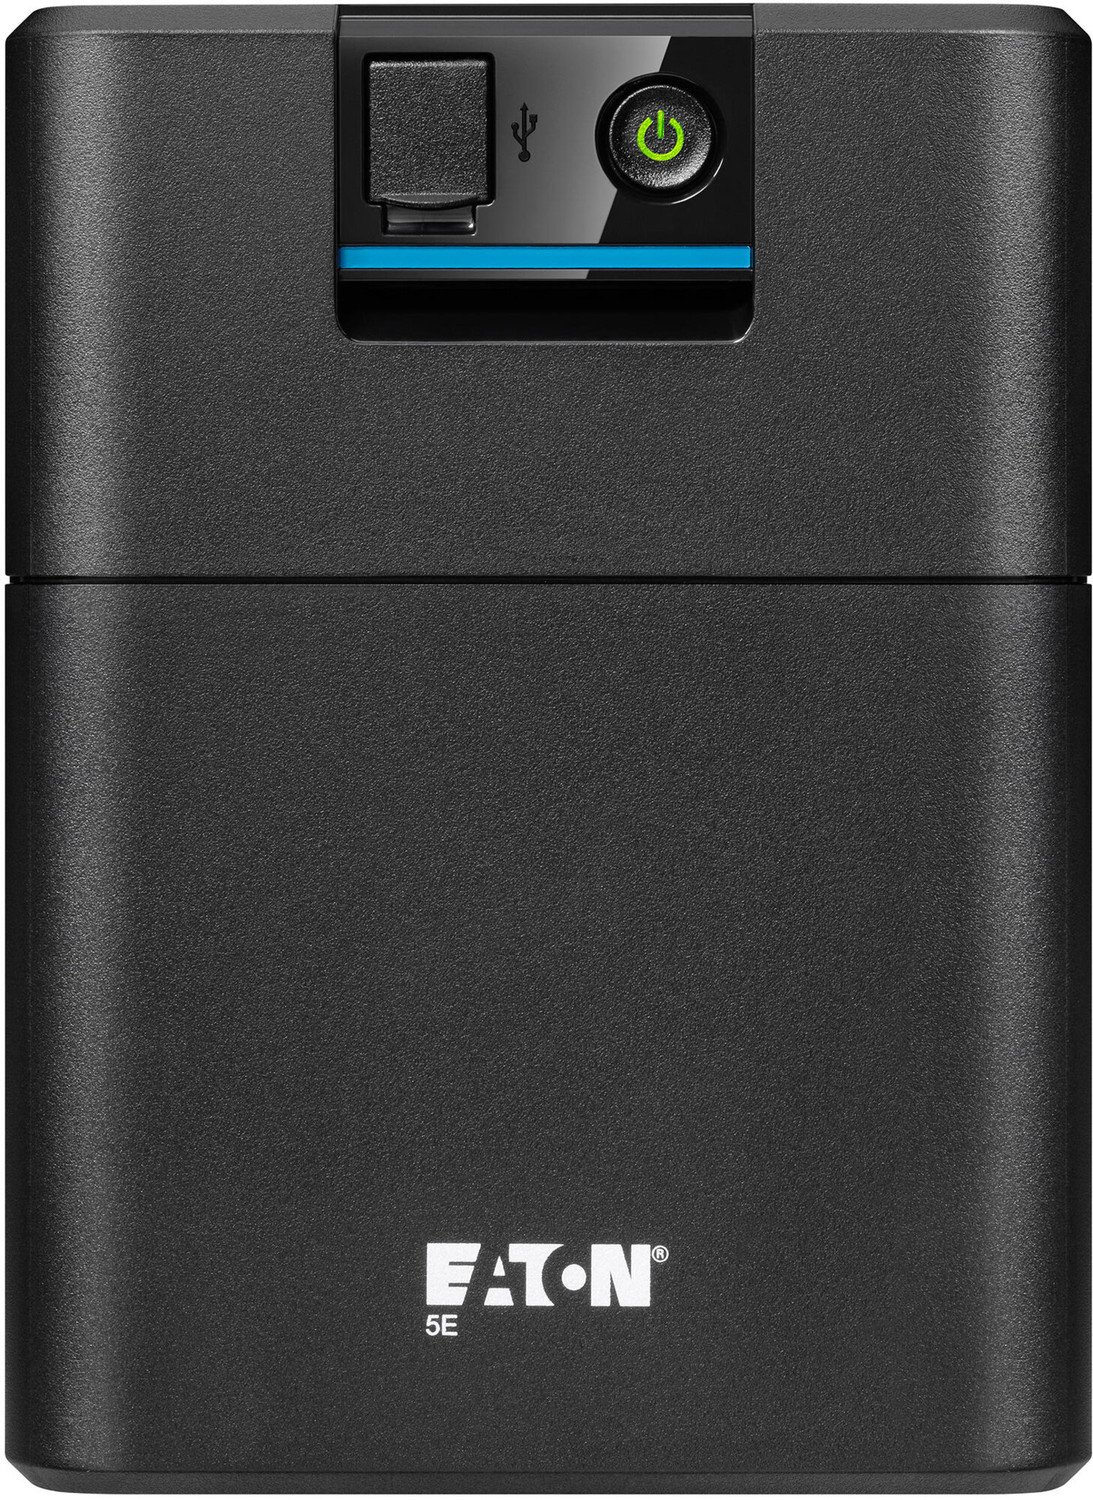 Eaton 5E 1600 USB IEC G2 - 5E1600UI